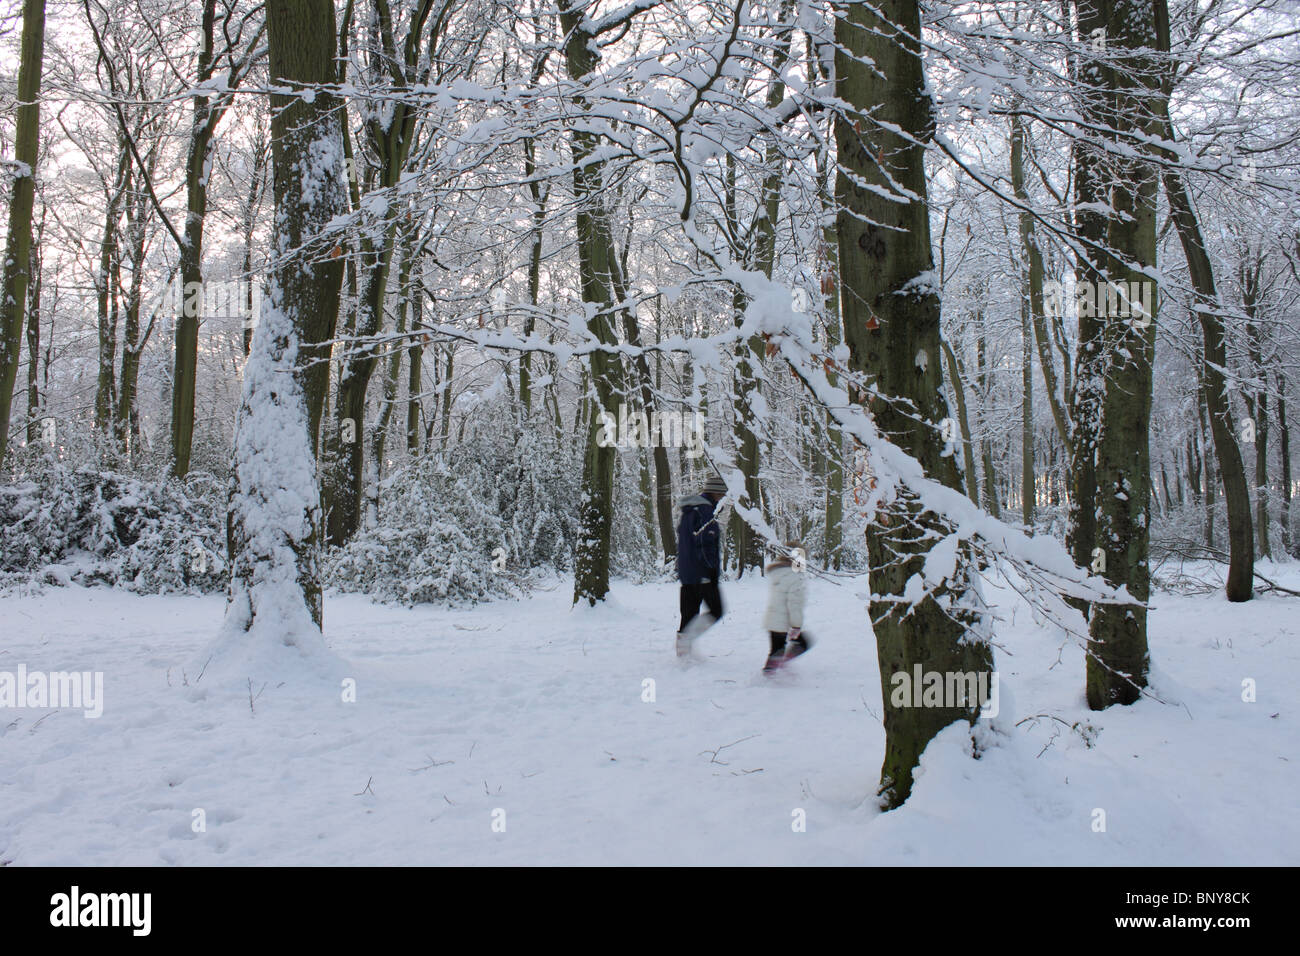 Woodland-Szene im Winter mit dicken Schnee am neuen Wäldchen, Sonning häufig mit zwei Figuren unter Bäumen, Oxfordshire, England, UK Stockfoto